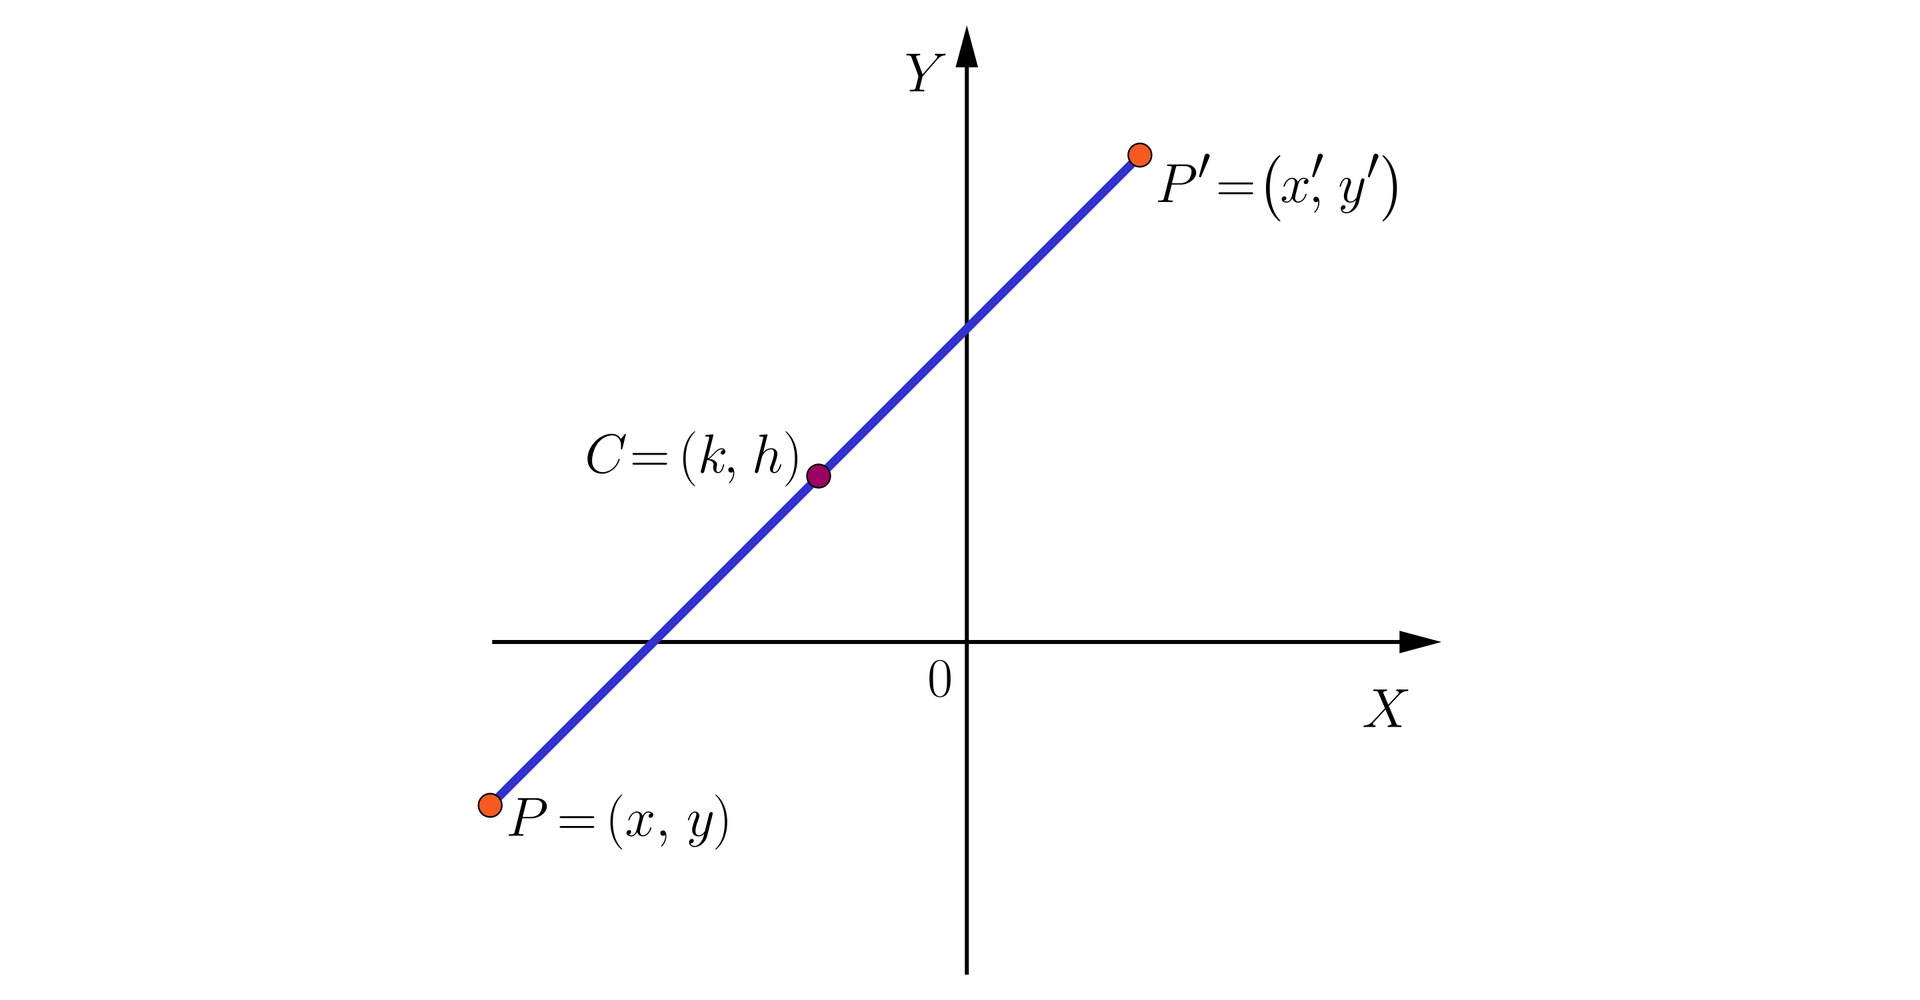 Ilustracja przedstawia poziomą oś x i pionową oś y. W układzie zaznaczono trzy punkty: w trzeciej ćwiartce znajduje się punkt P o współrzędnych nawias x średnik y zamknięcie nawiasu, w drugiej ćwiartce znajduje się punkt C o współrzędnych nawias k średnik h zamknięcie nawiasu, trzeci punkt podpisany P', znajduje się on w pierwszej ćwiartce, a jego współrzędne to nawias x' średnik y' zamknięcie nawiasu. Punkty P i P' łączy odcinek, który przechodzi przez punkt C.